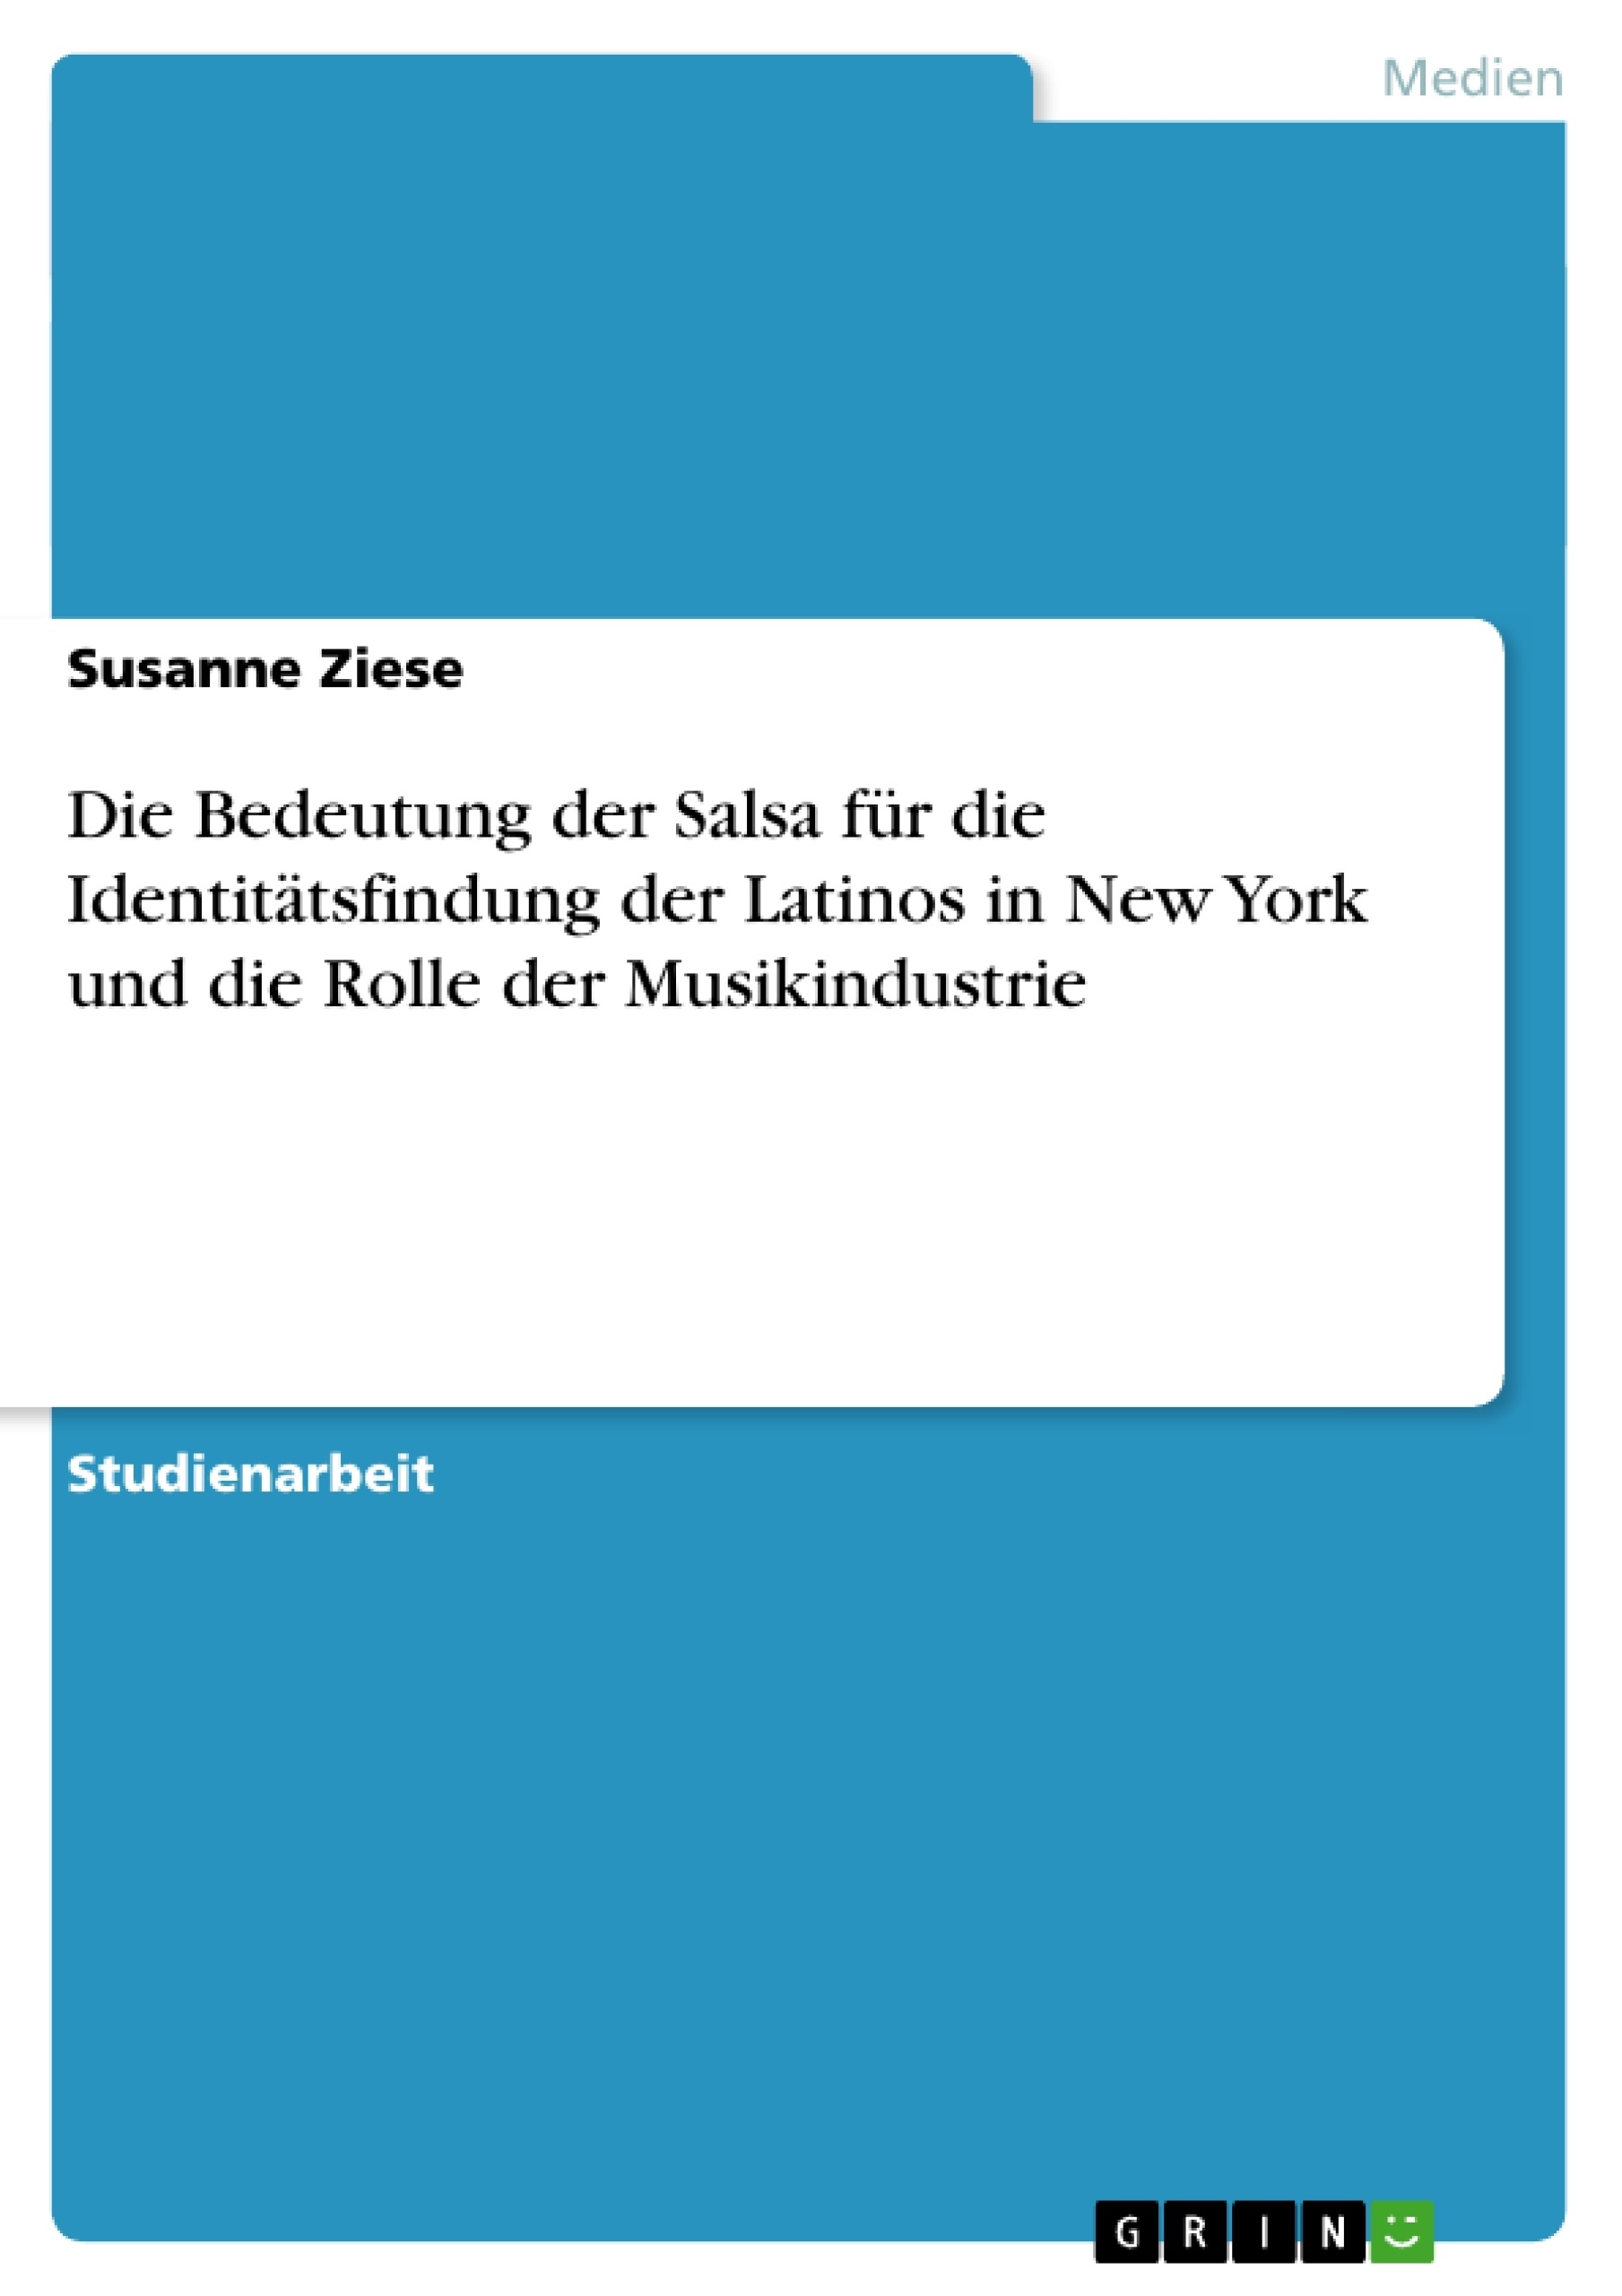 Titre: Die Bedeutung der Salsa für die Identitätsfindung der Latinos in New York und die Rolle der Musikindustrie